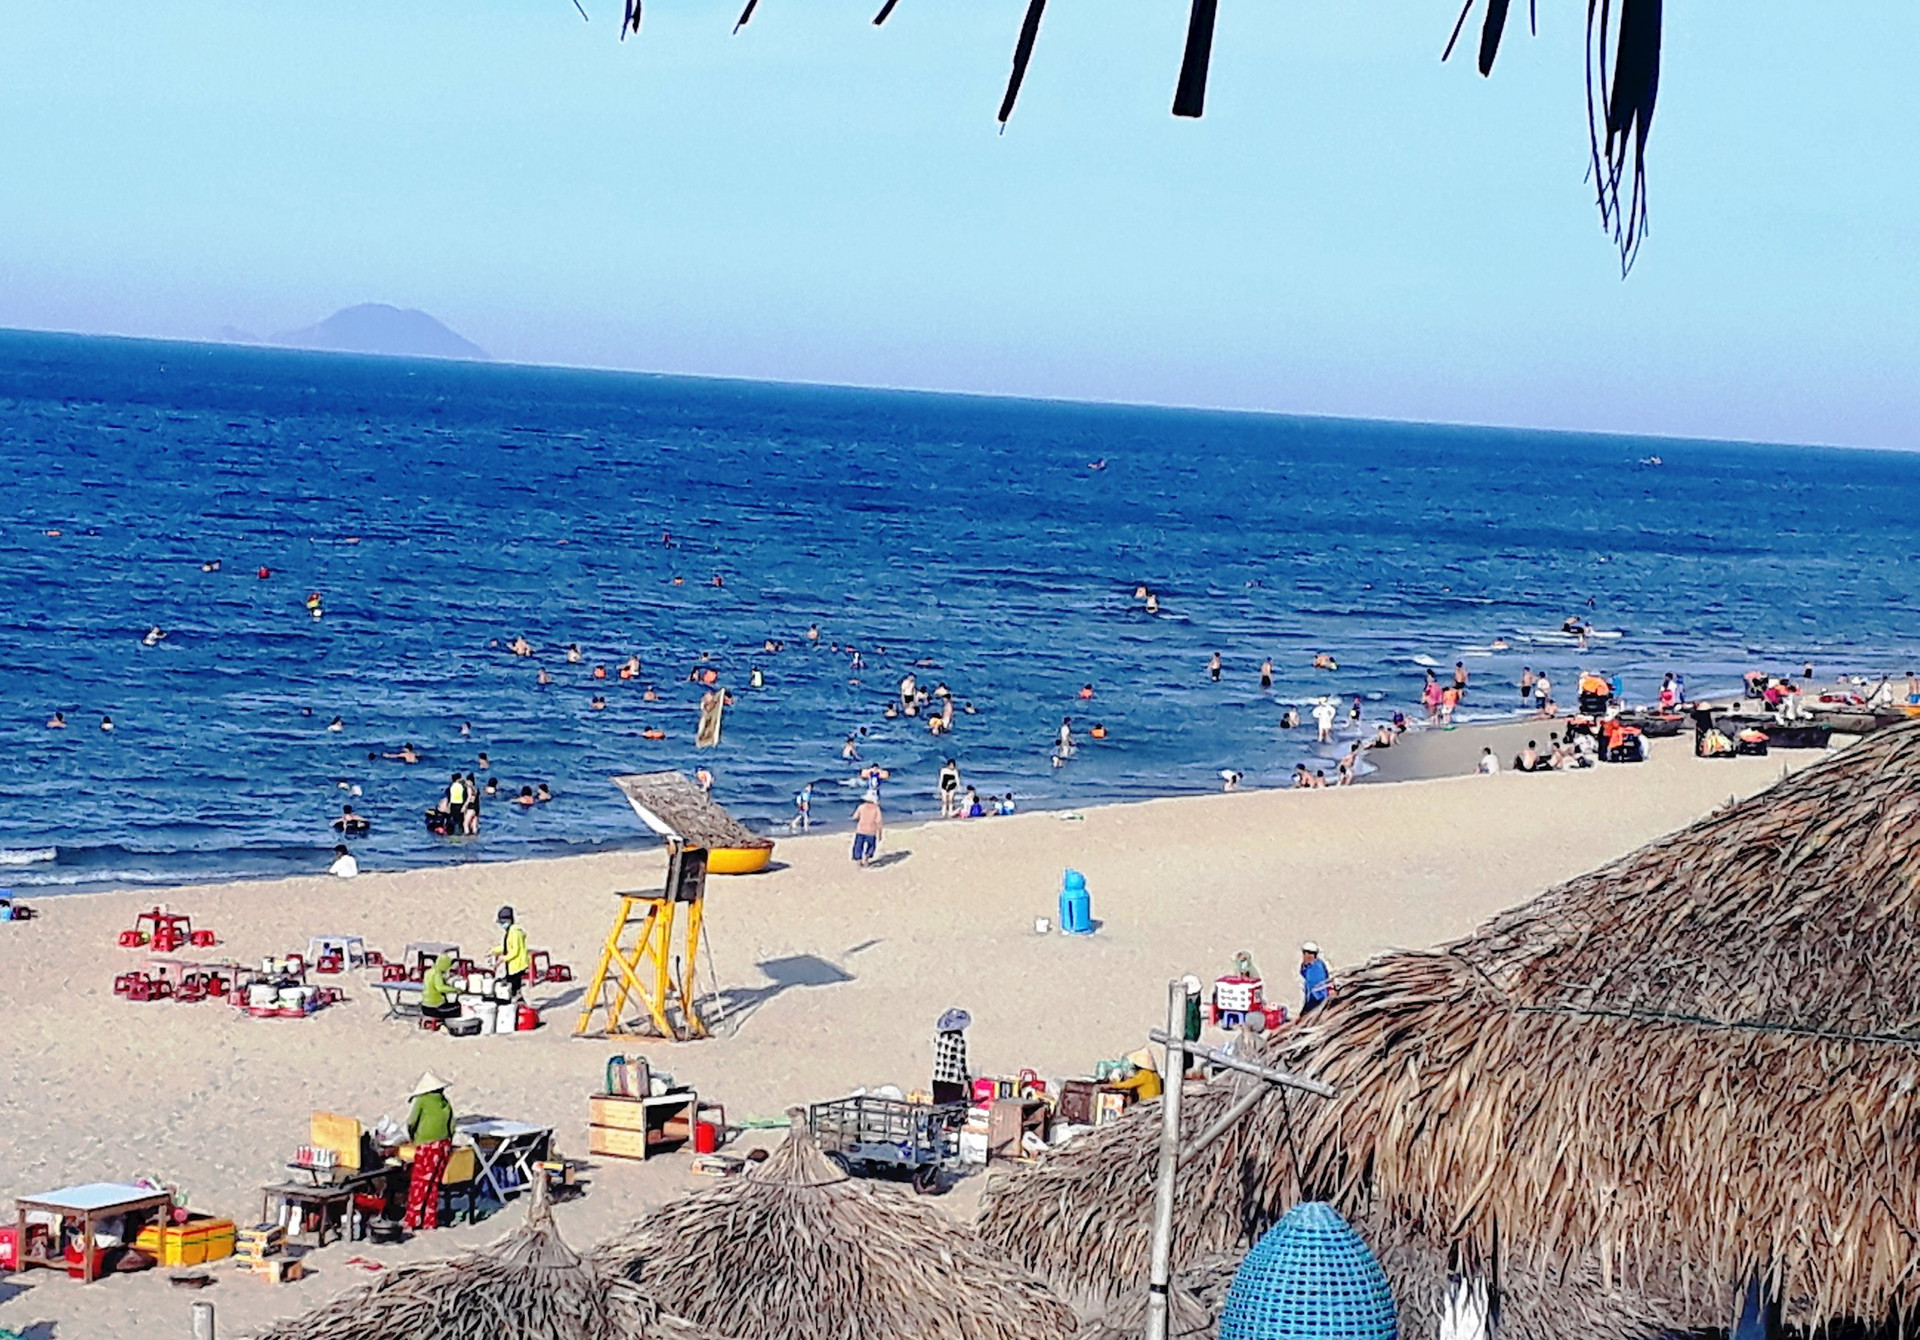 Bãi biển An Bàng – Cẩm An luôn thu hút đông đảo du khách và nhân dân đến tham quan, tắm mát. Ảnh: ĐỖ HUẤN